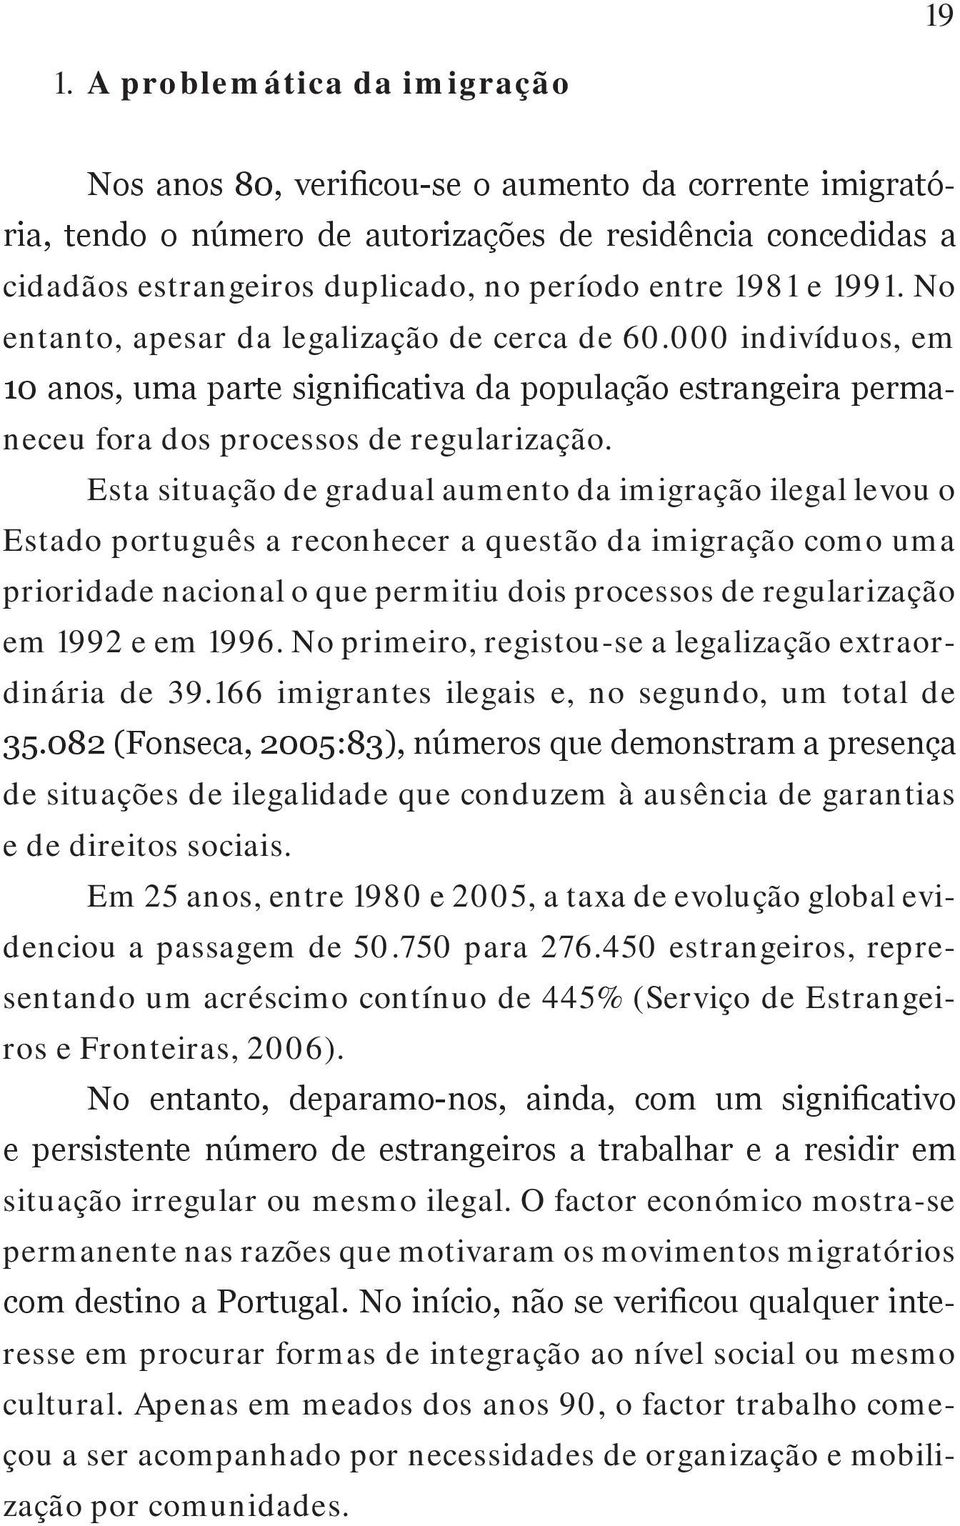 Esta situação de gradual aumento da imigração ilegal levou o Estado português a reconhecer a questão da imigração como uma prioridade nacional o que permitiu dois processos de regularização em 1992 e